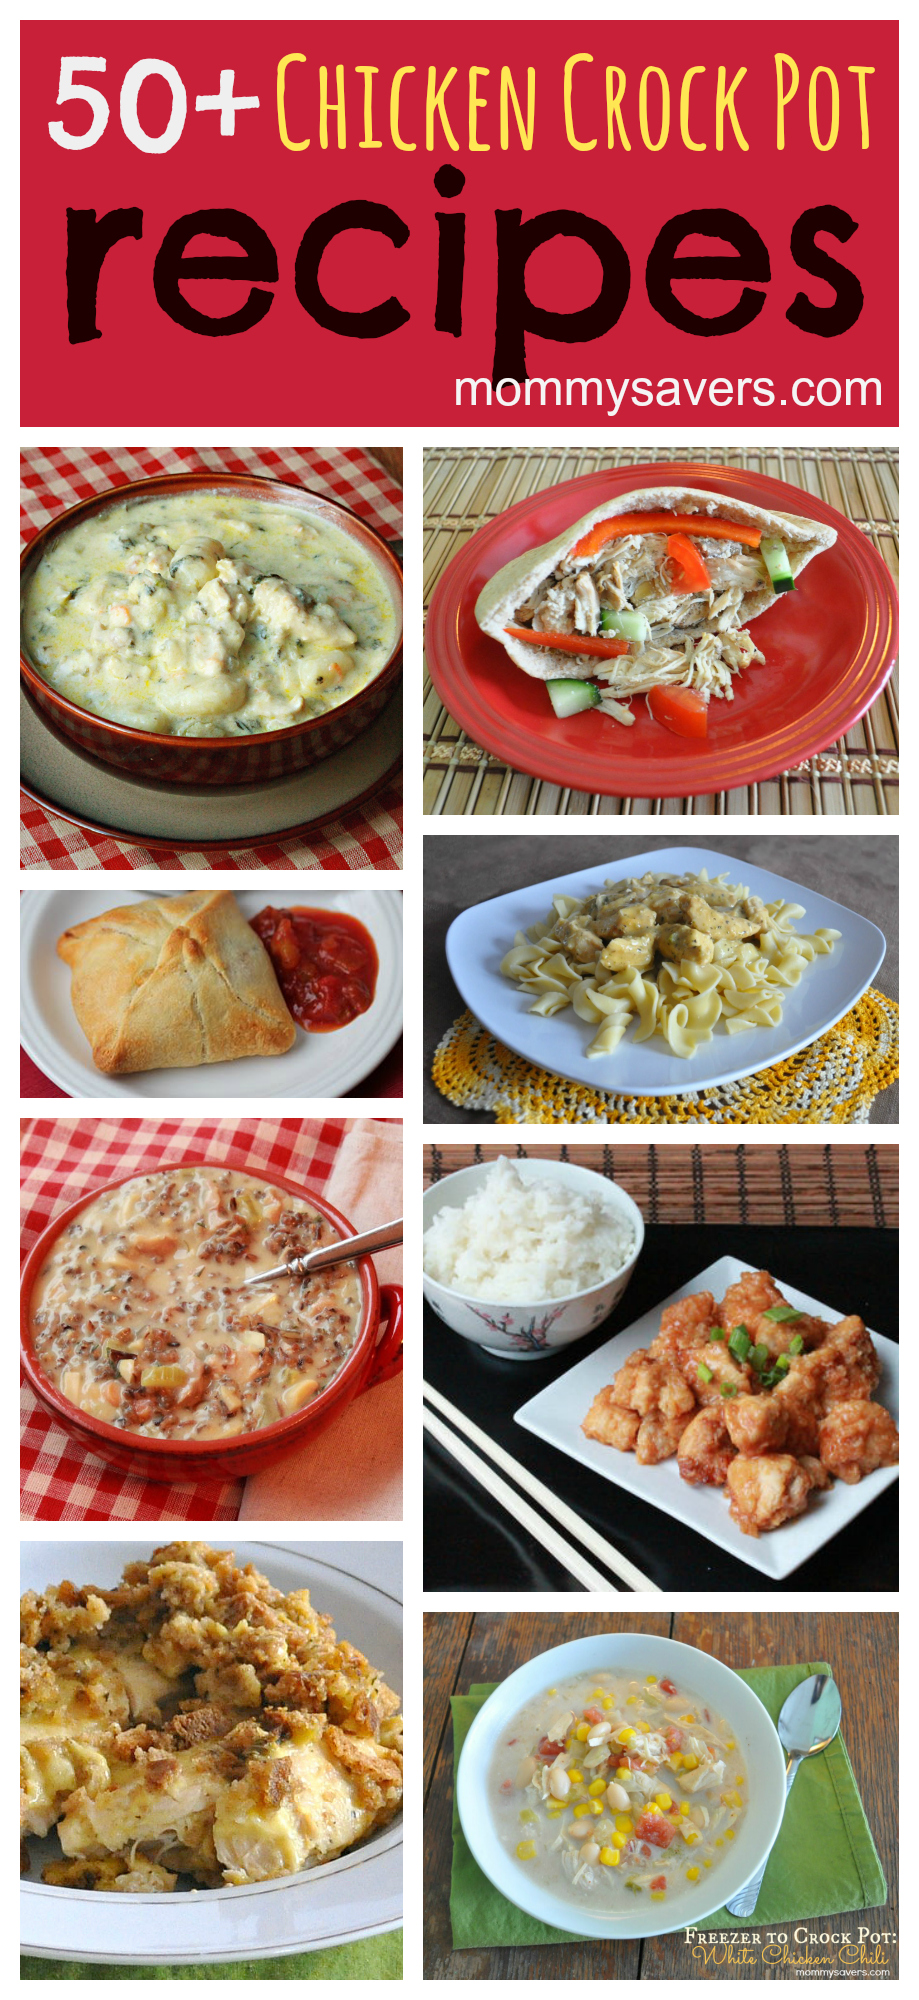 50+ Easy Chicken Crock Pot Recipes | Mommysavers